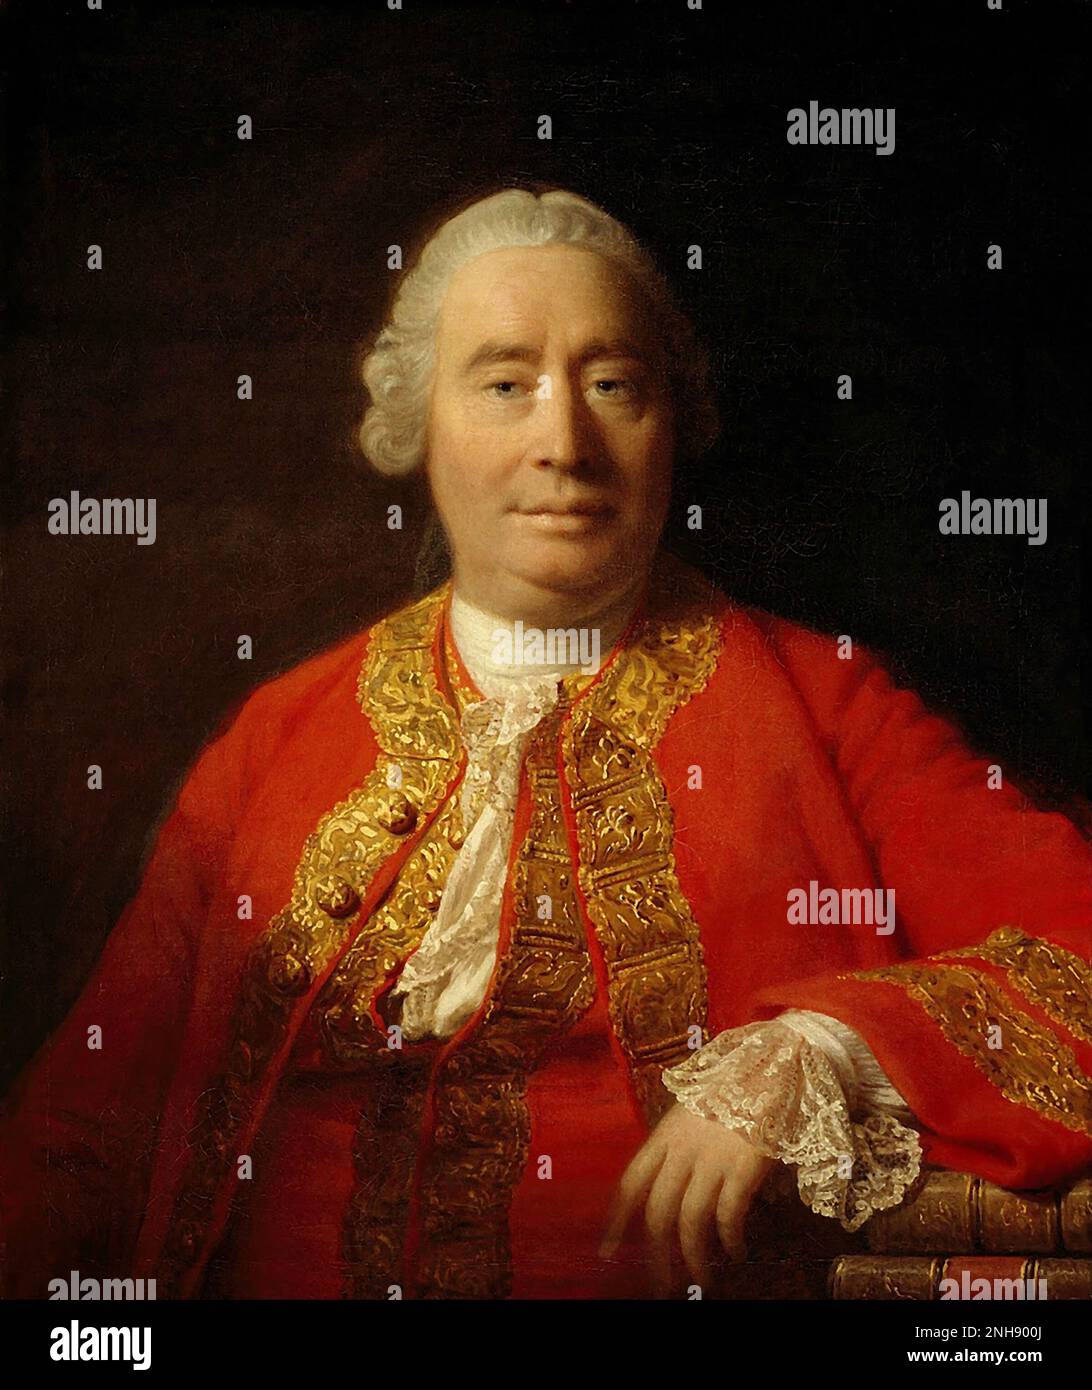 David Hume (1711-1776), filosofo, storico ed economista scozzese dell'Illuminismo, meglio conosciuto per il suo sistema altamente influente di empirismo filosofico, scetticismo e naturalismo. Pittura di Allan Ramsay (1713-1784), 1766. Foto Stock